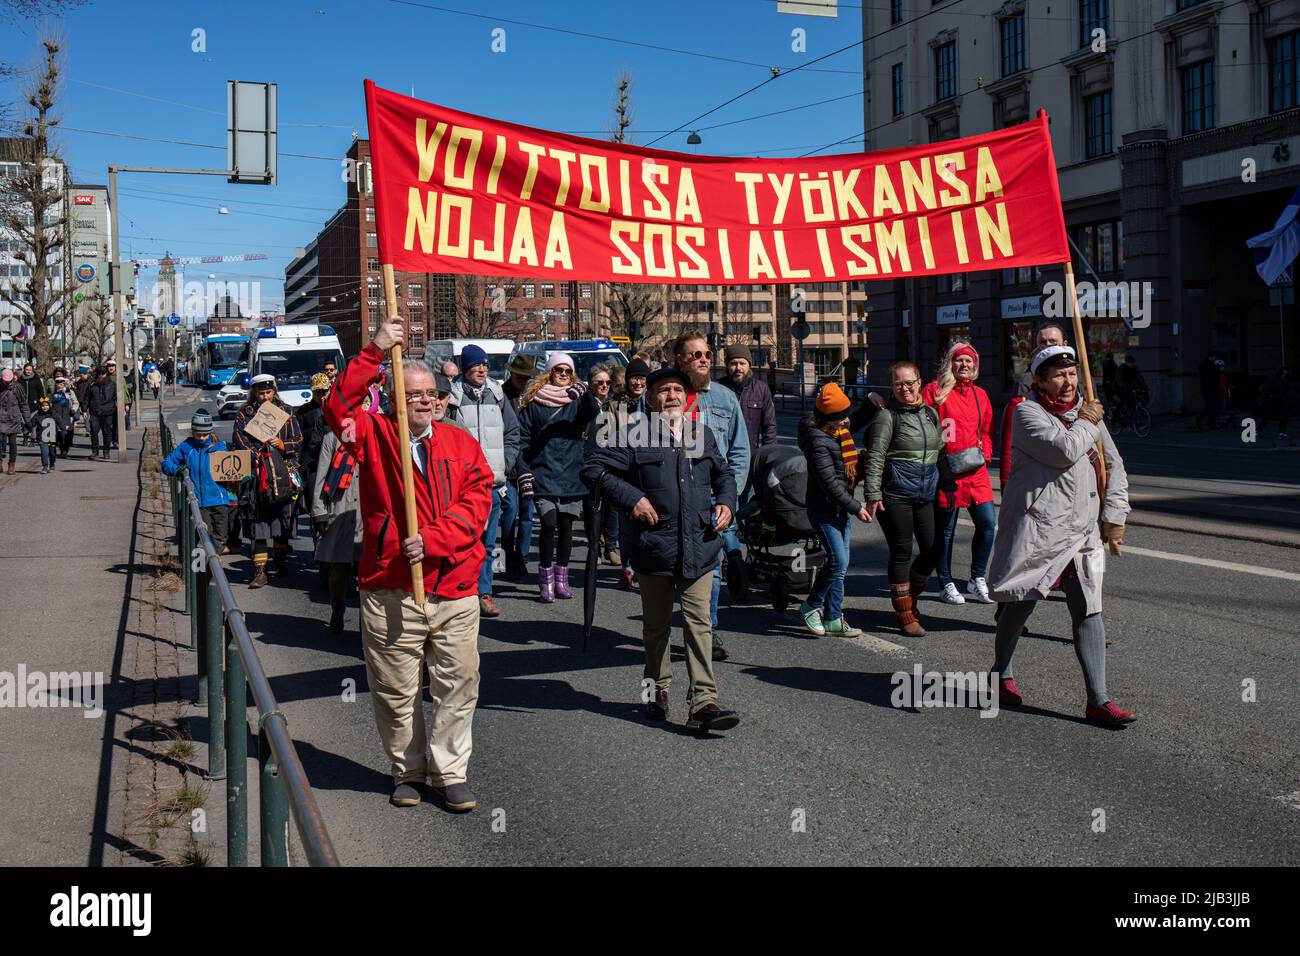 Voittoisa työkansa nojaa sosialismiin. Red banner at socialist May Day parade in International Workers' Day in Helsinki, Finland. Stock Photo